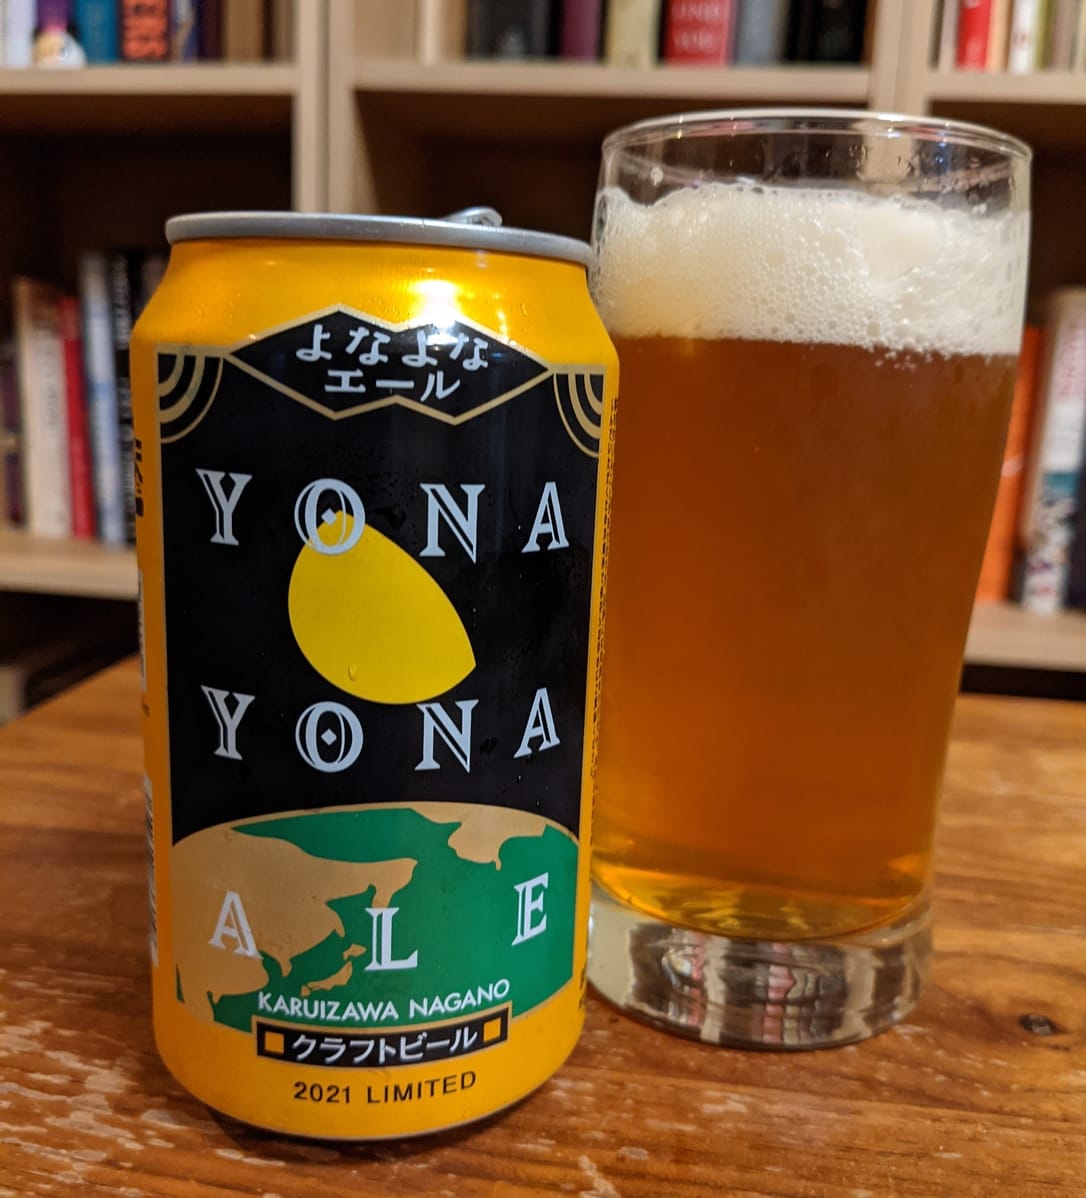 Japanese craft beers